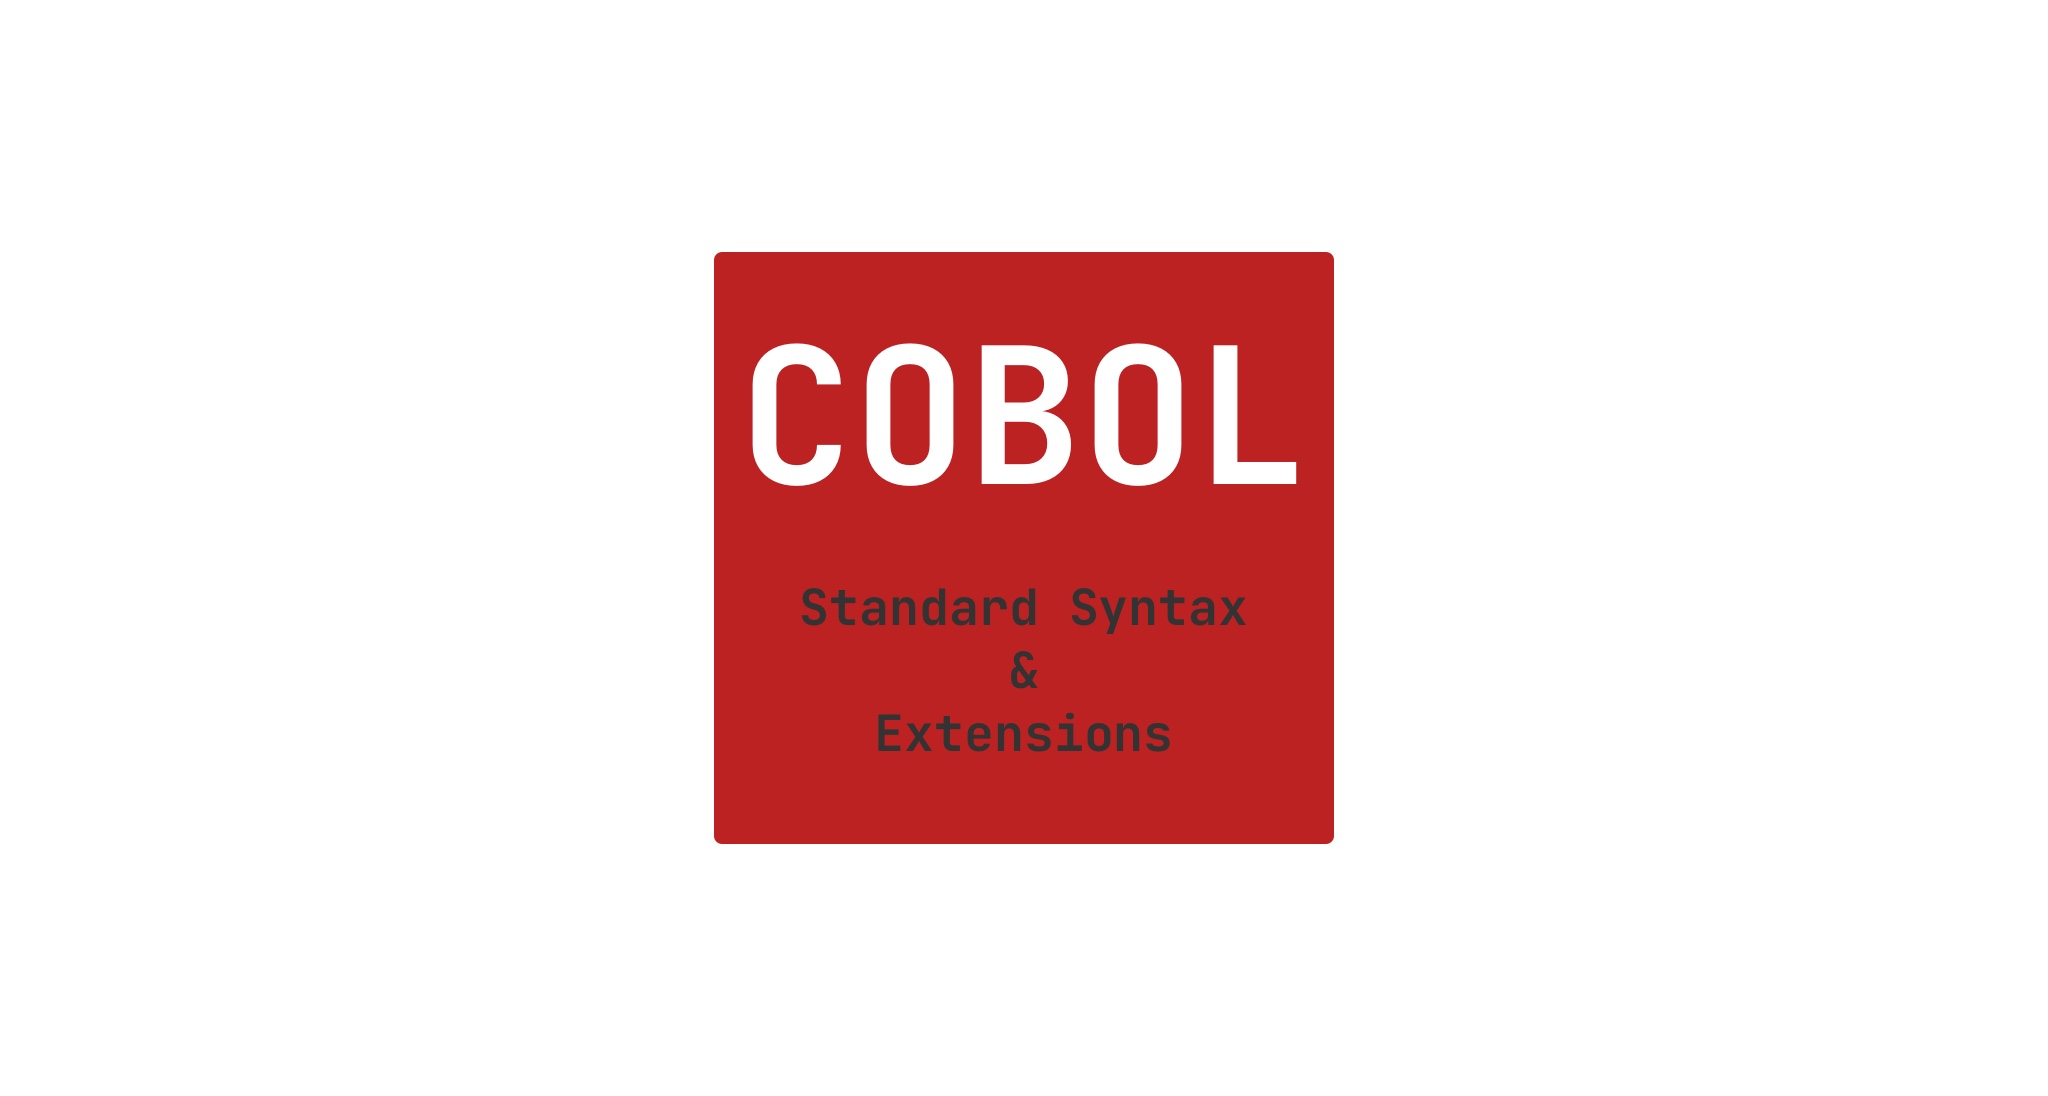 P3/COBOL Product Details